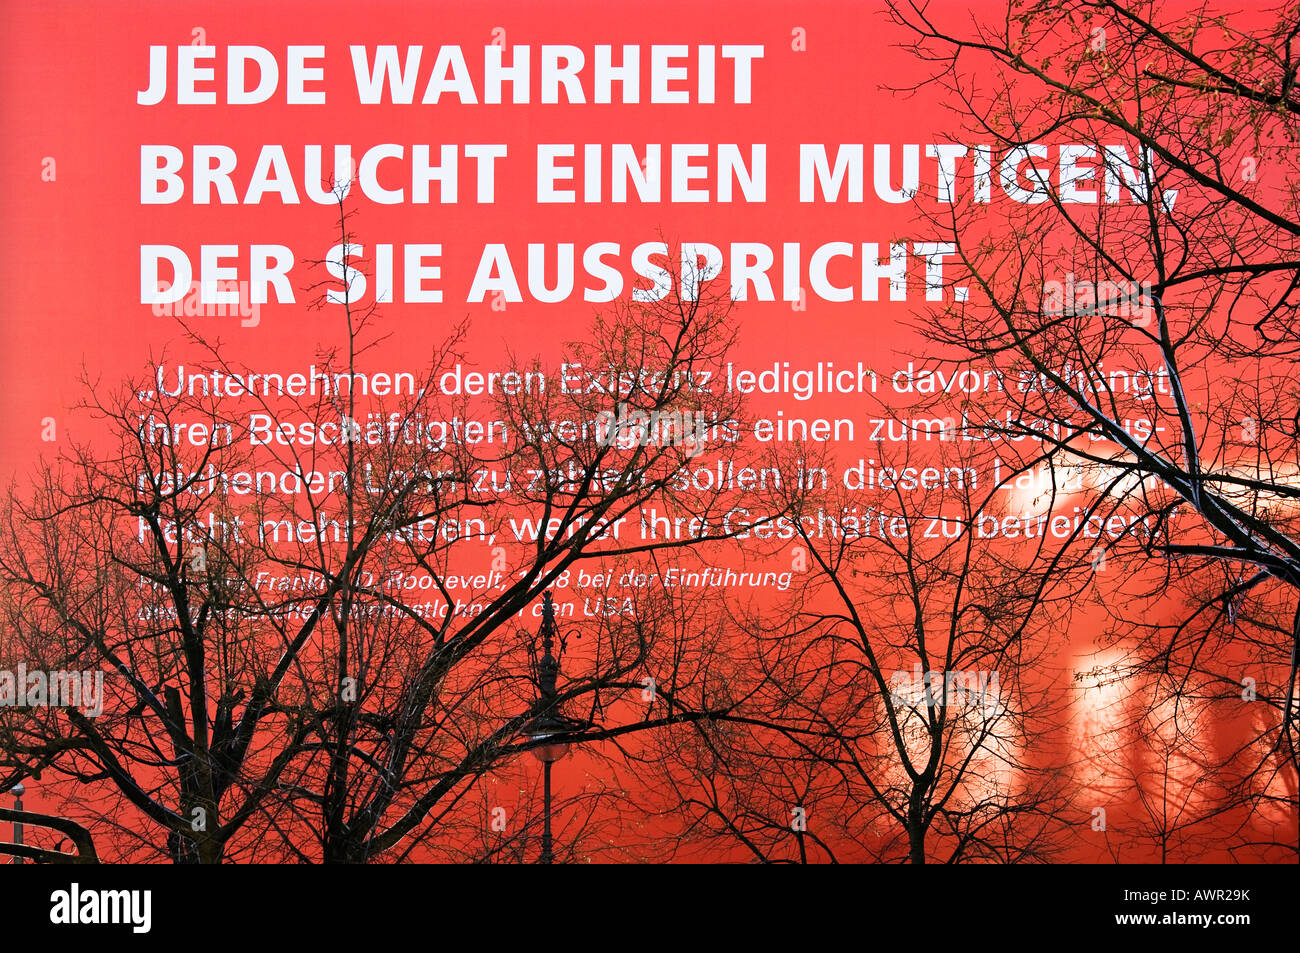 German Confederation of Trade Unions (Deutscher Gewerkschaftsbund, DGB) political ad campaign concerning the minimum wage, Unte Stock Photo